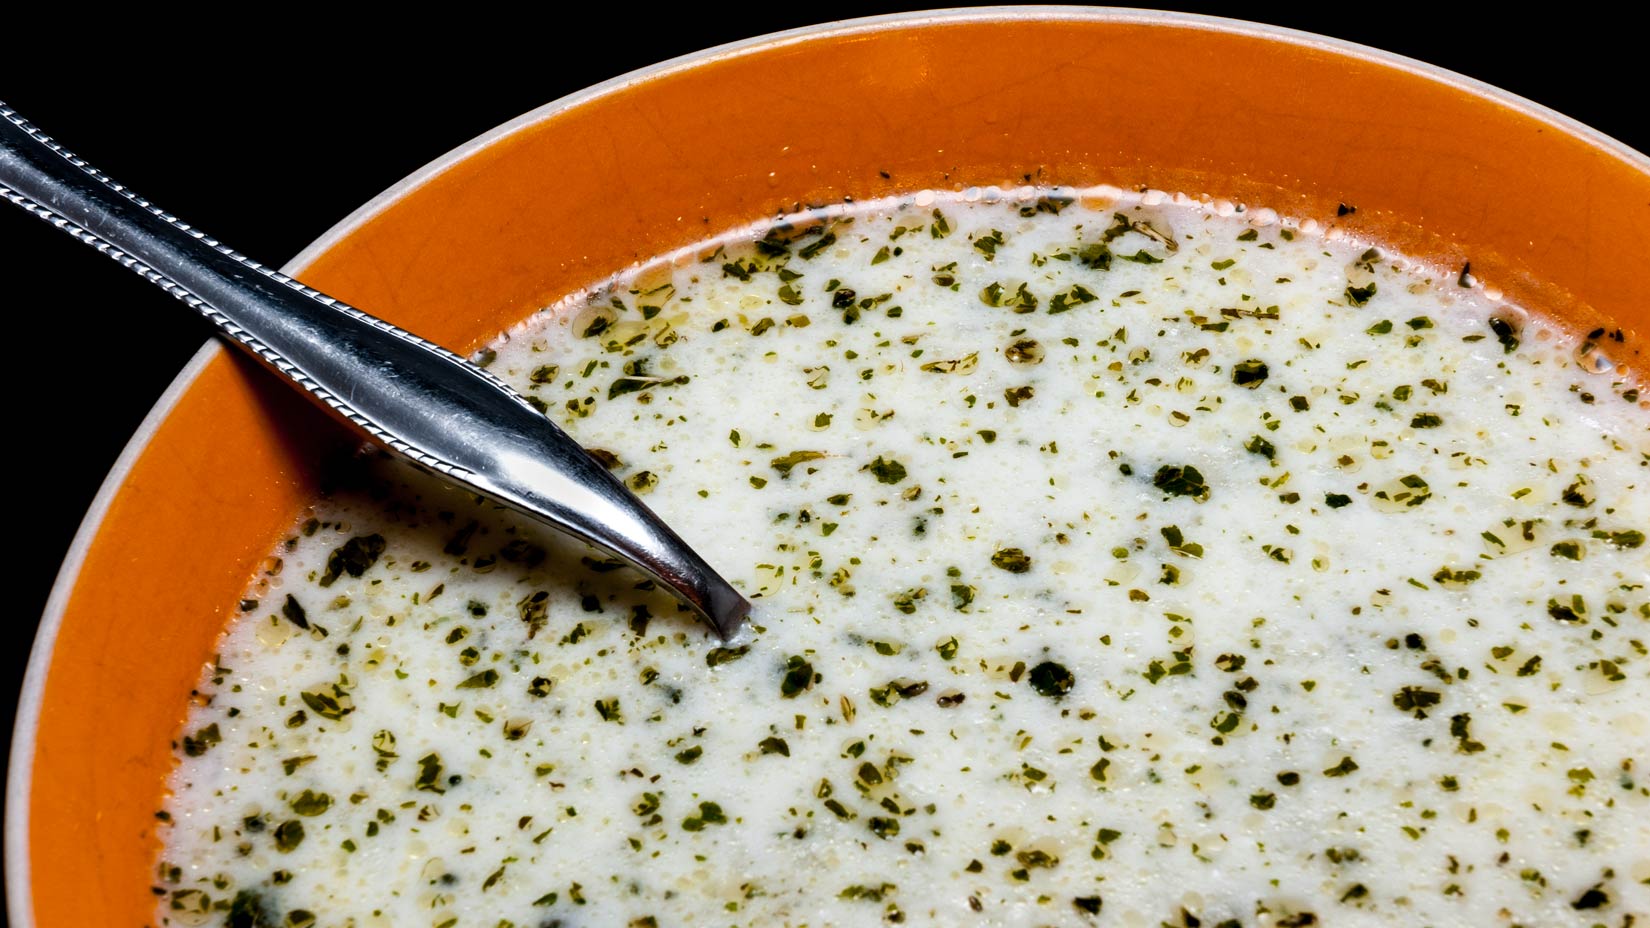 Jogurtová polévka Tanéa je sytá a velmi chutná